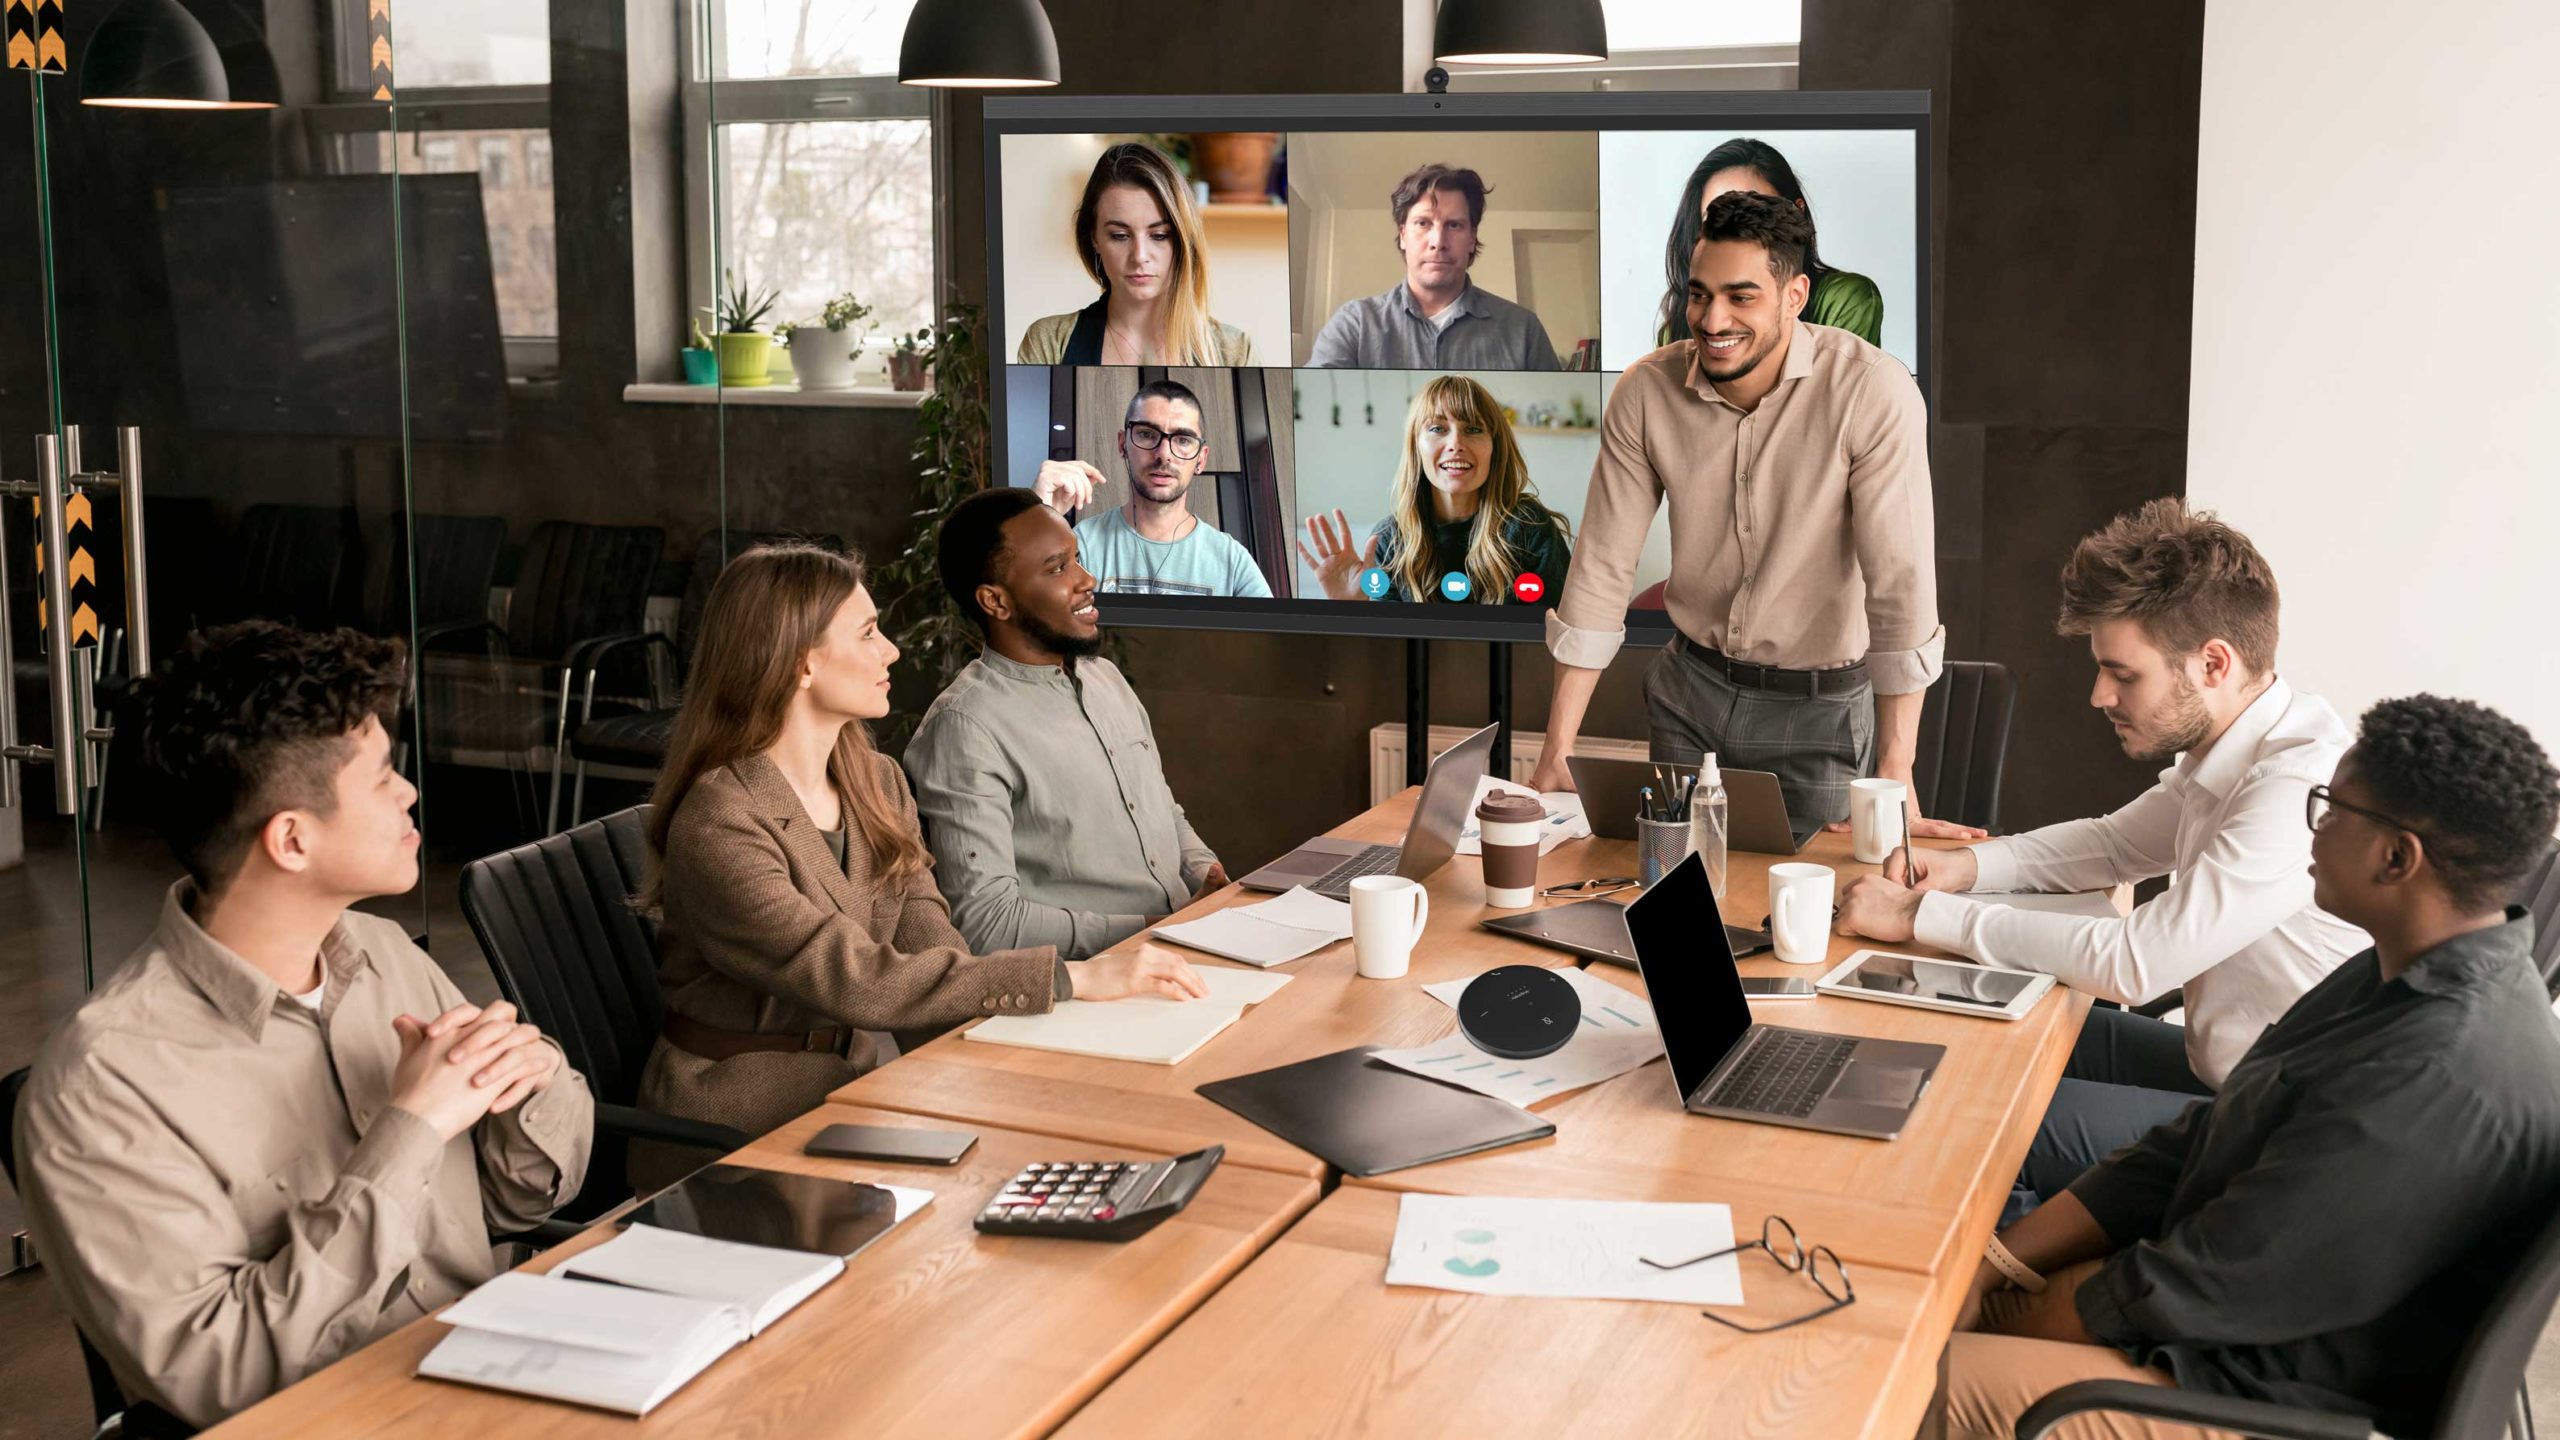 colleagues-having-meeting-in-board-room